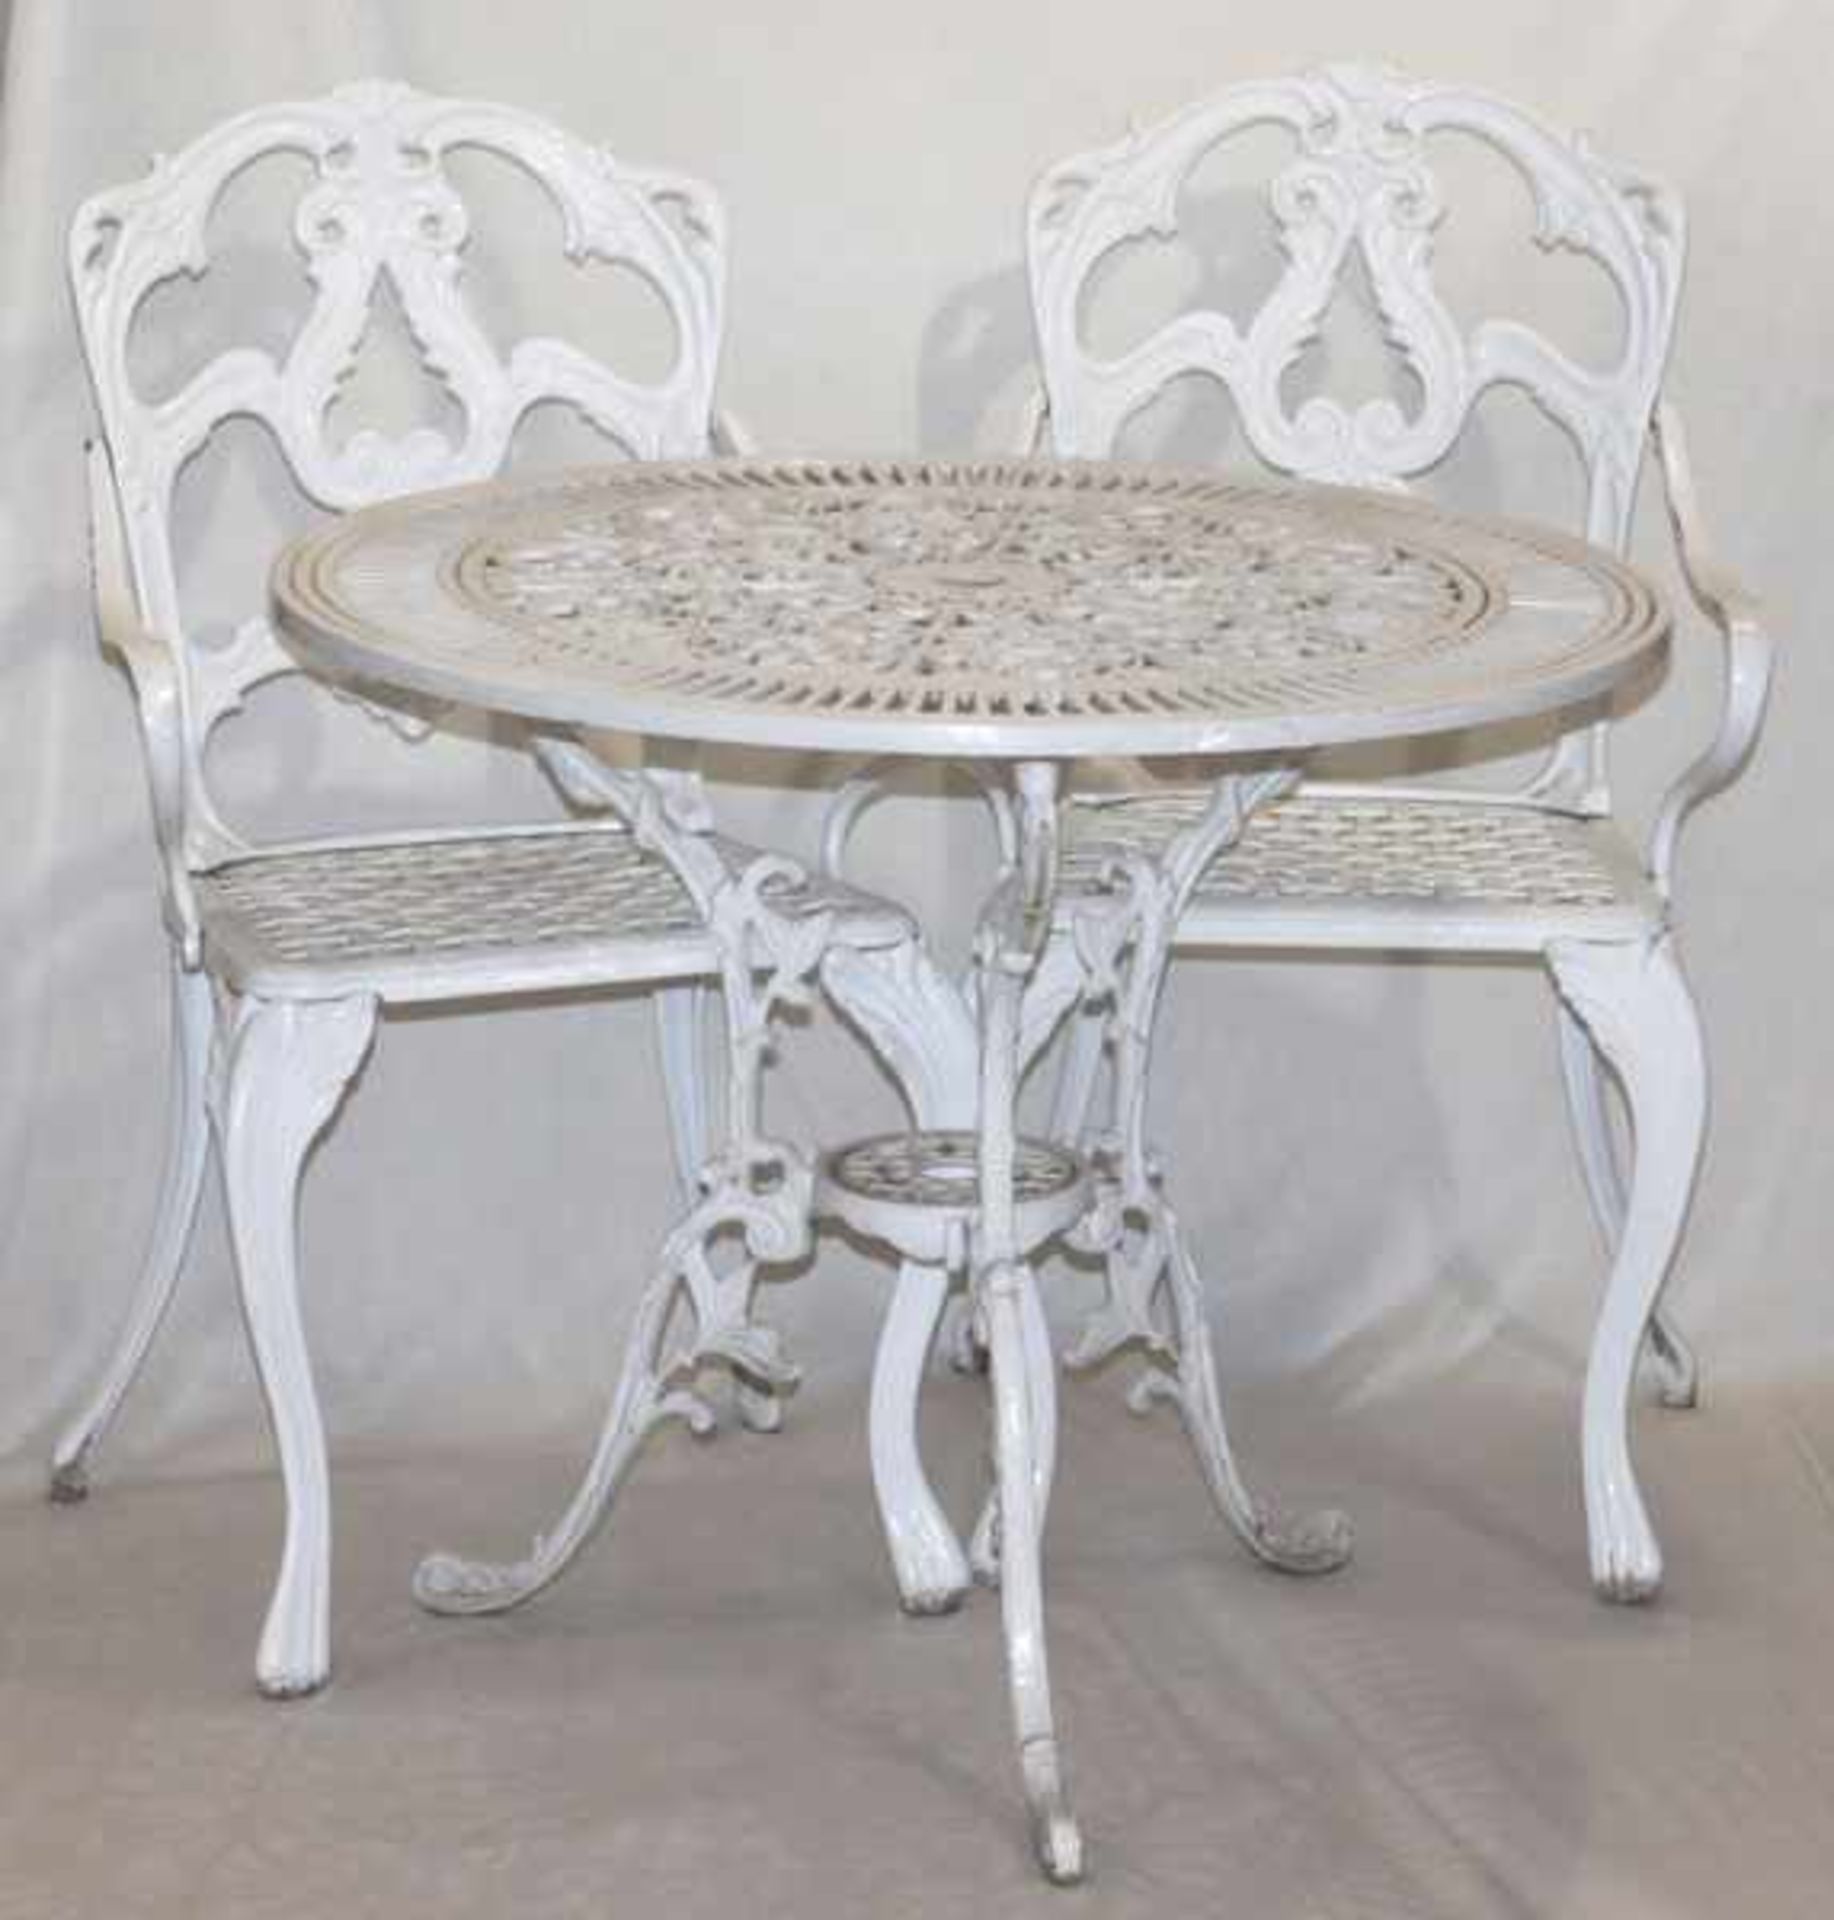 Garten-Eisengarnitur, weiß bemalt, runder Tisch, H 67 cm, D 80 cm, und 3 passende Armlehnstühle, H